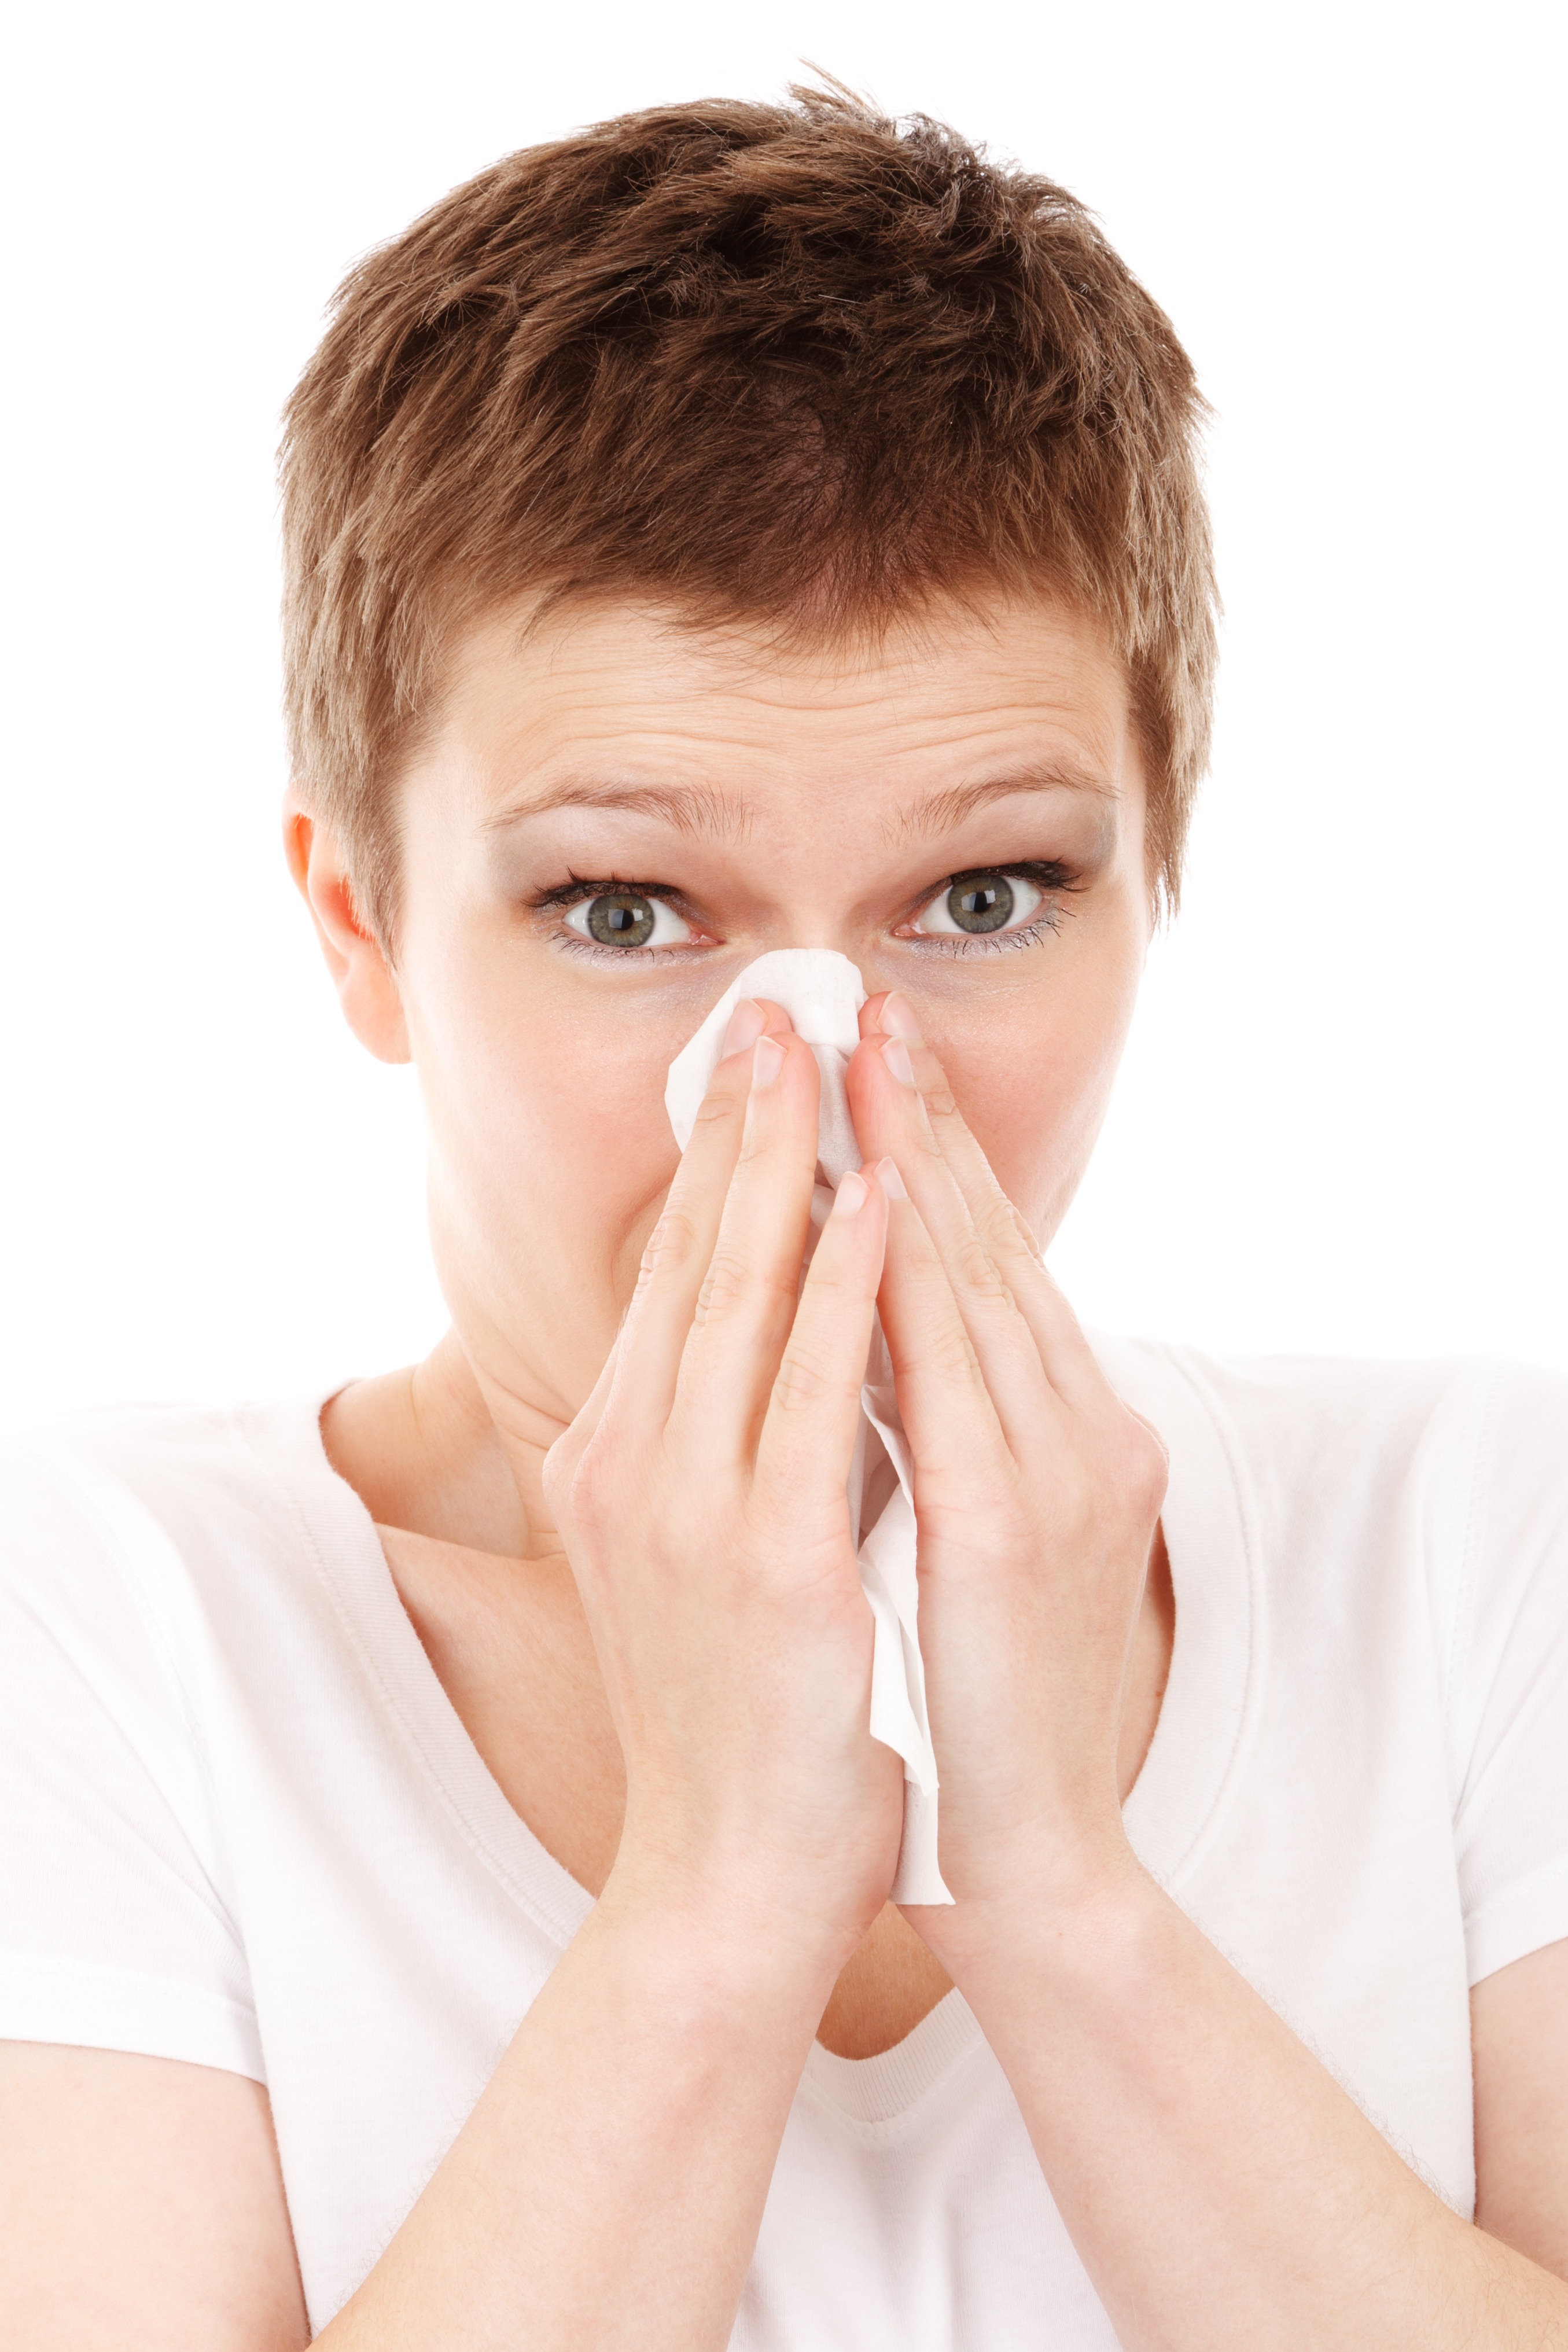 Как не спутать сезонную аллергию с COVID-19?